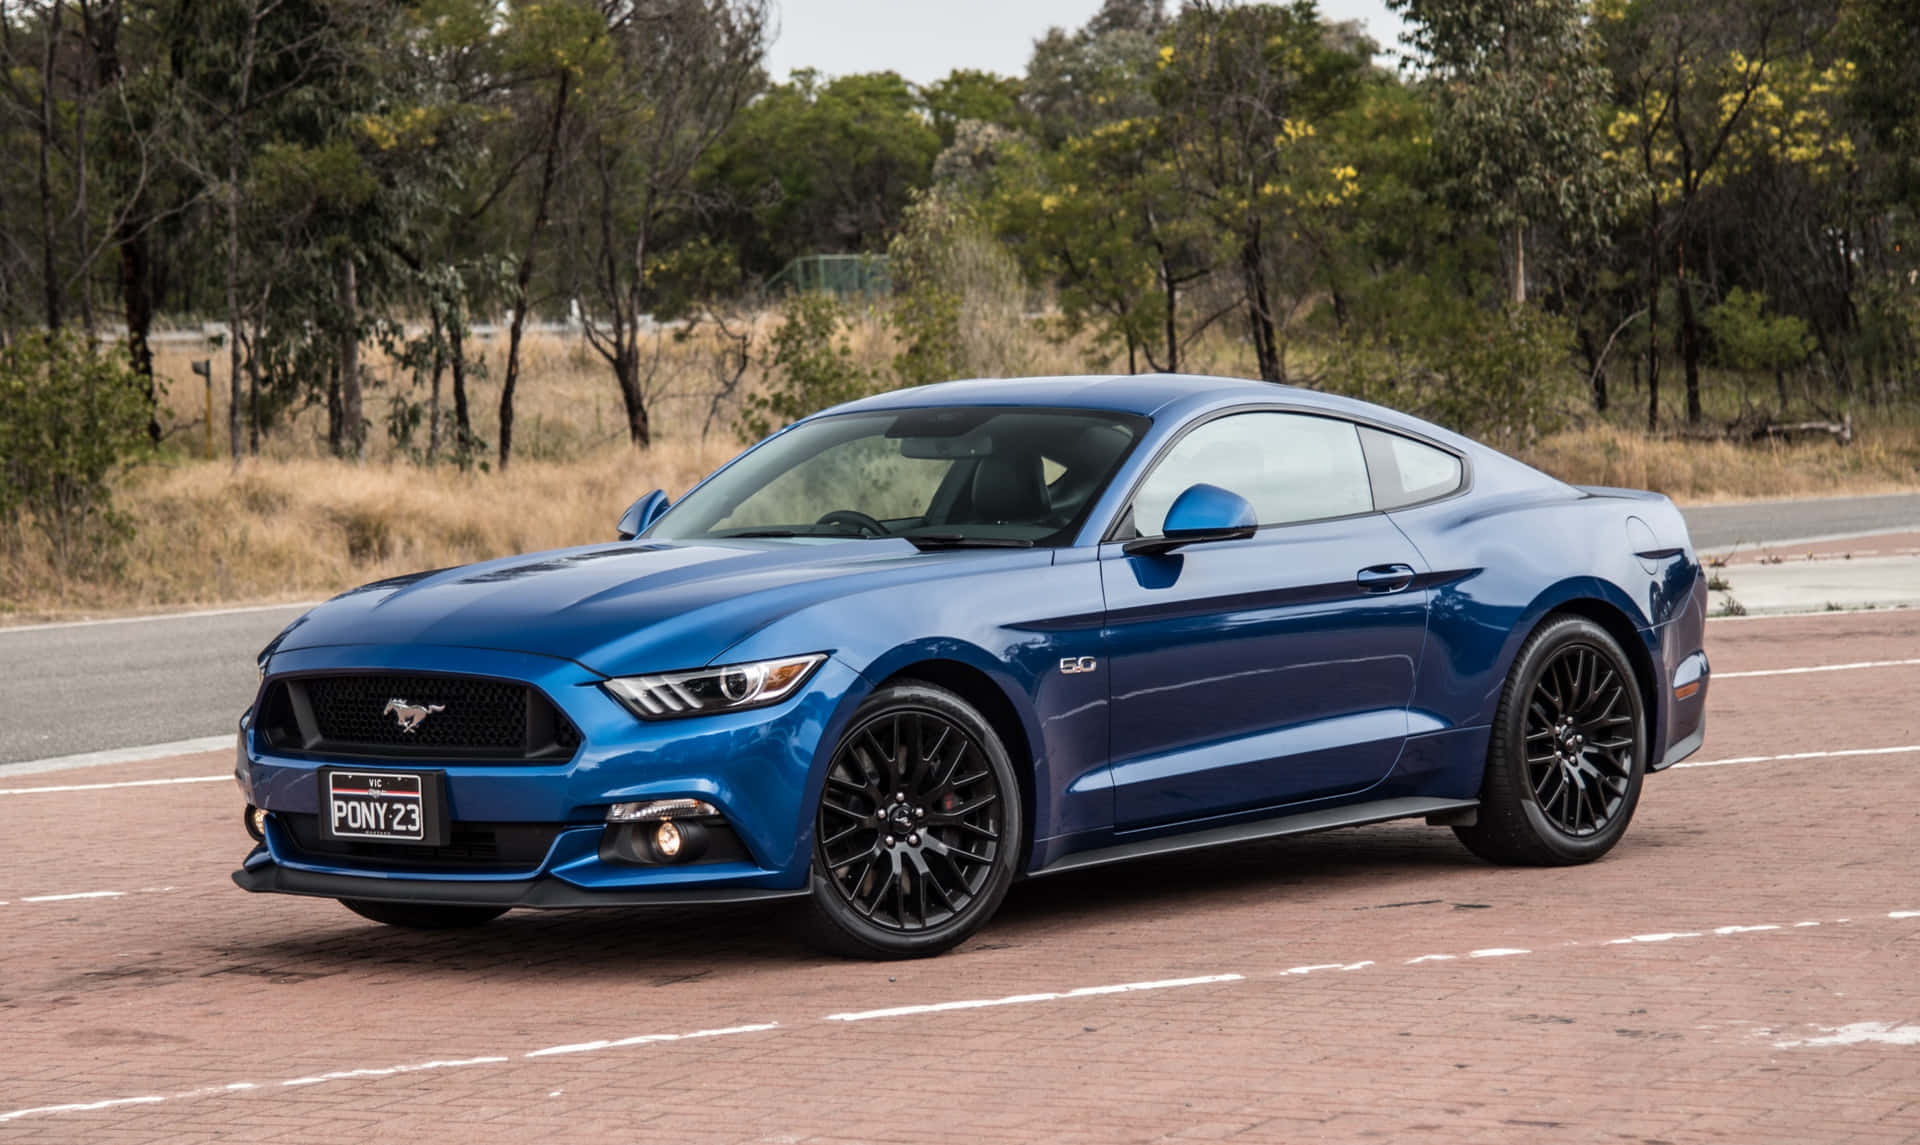 Den blå Ford Mustang kører ned ad vejen